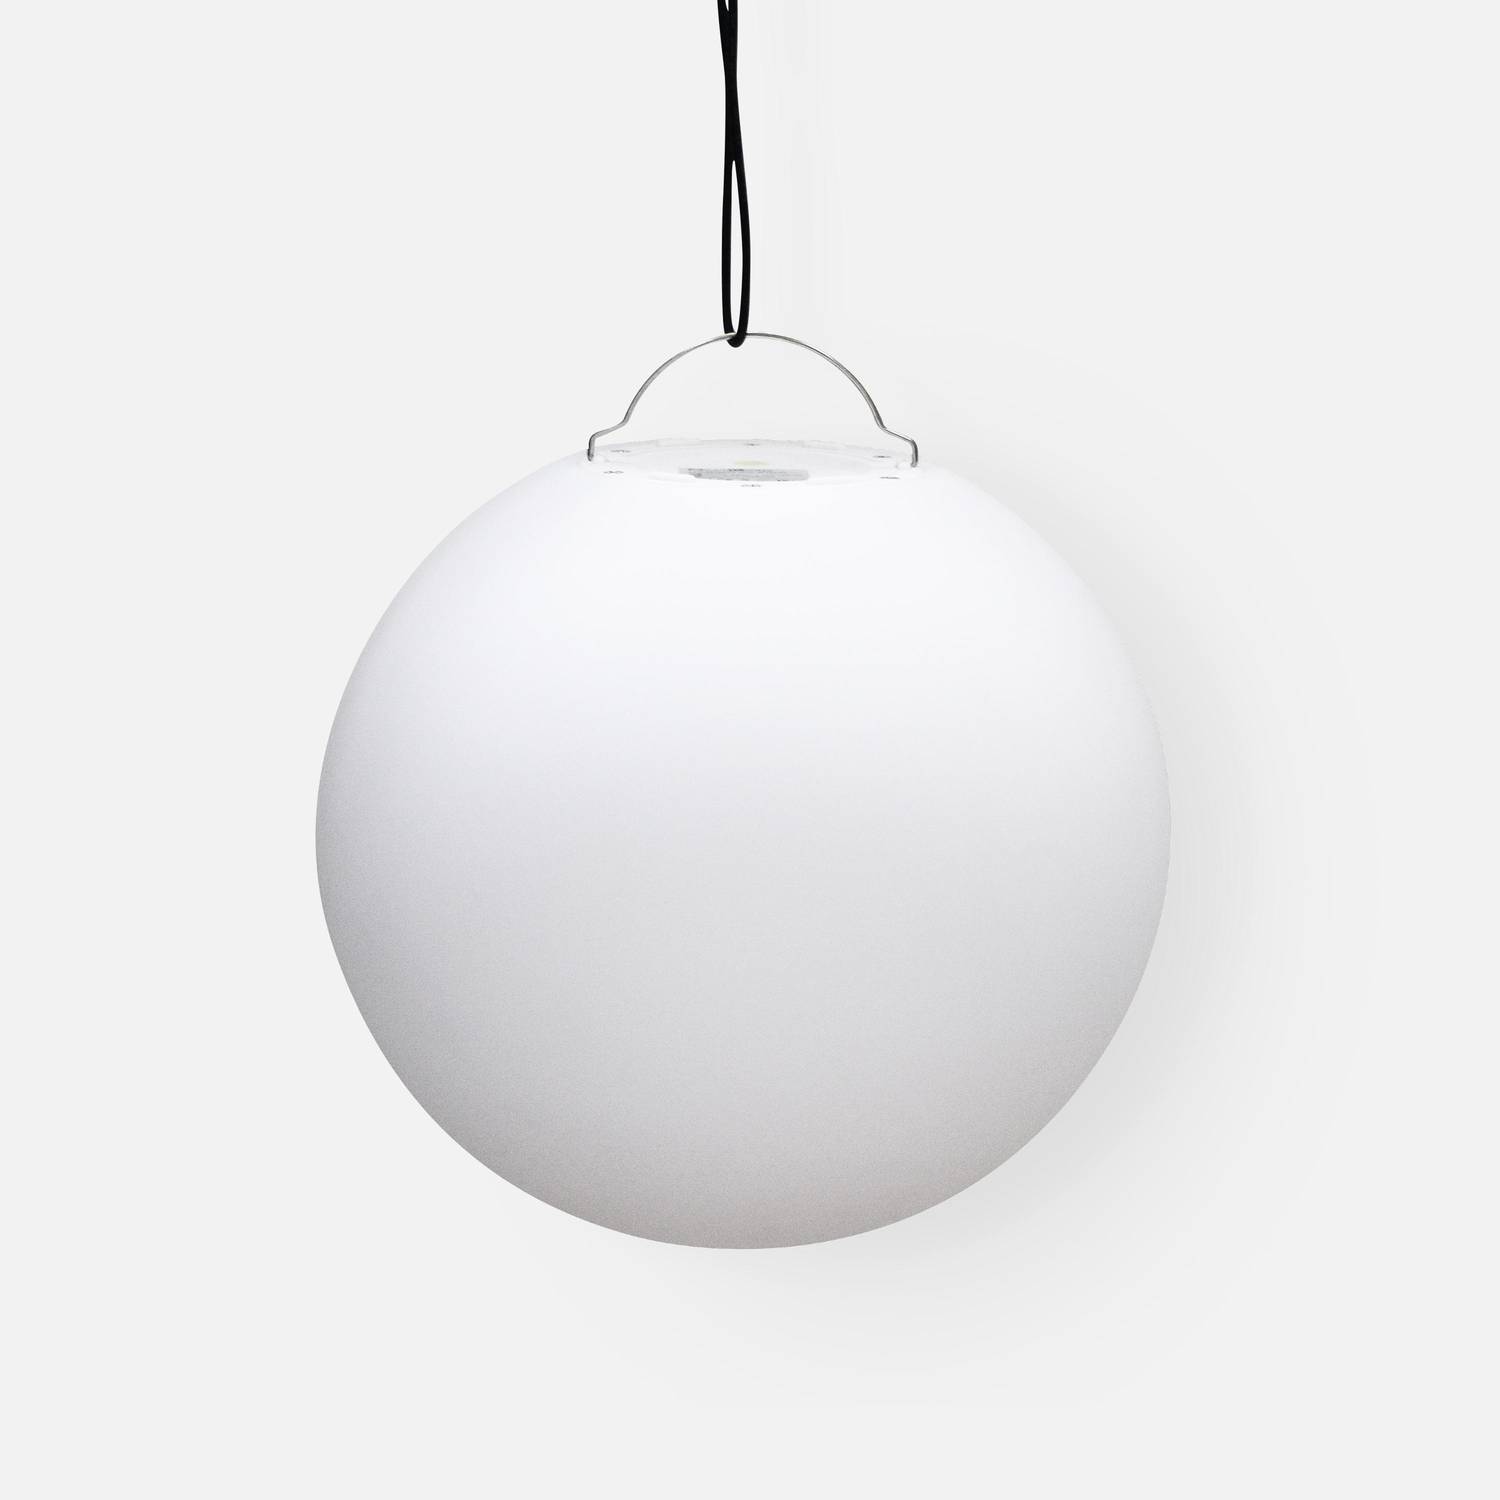 Boule LED 40cm – Sphère décorative lumineuse, Ø40cm, blanc chaud, commande à distance Photo5